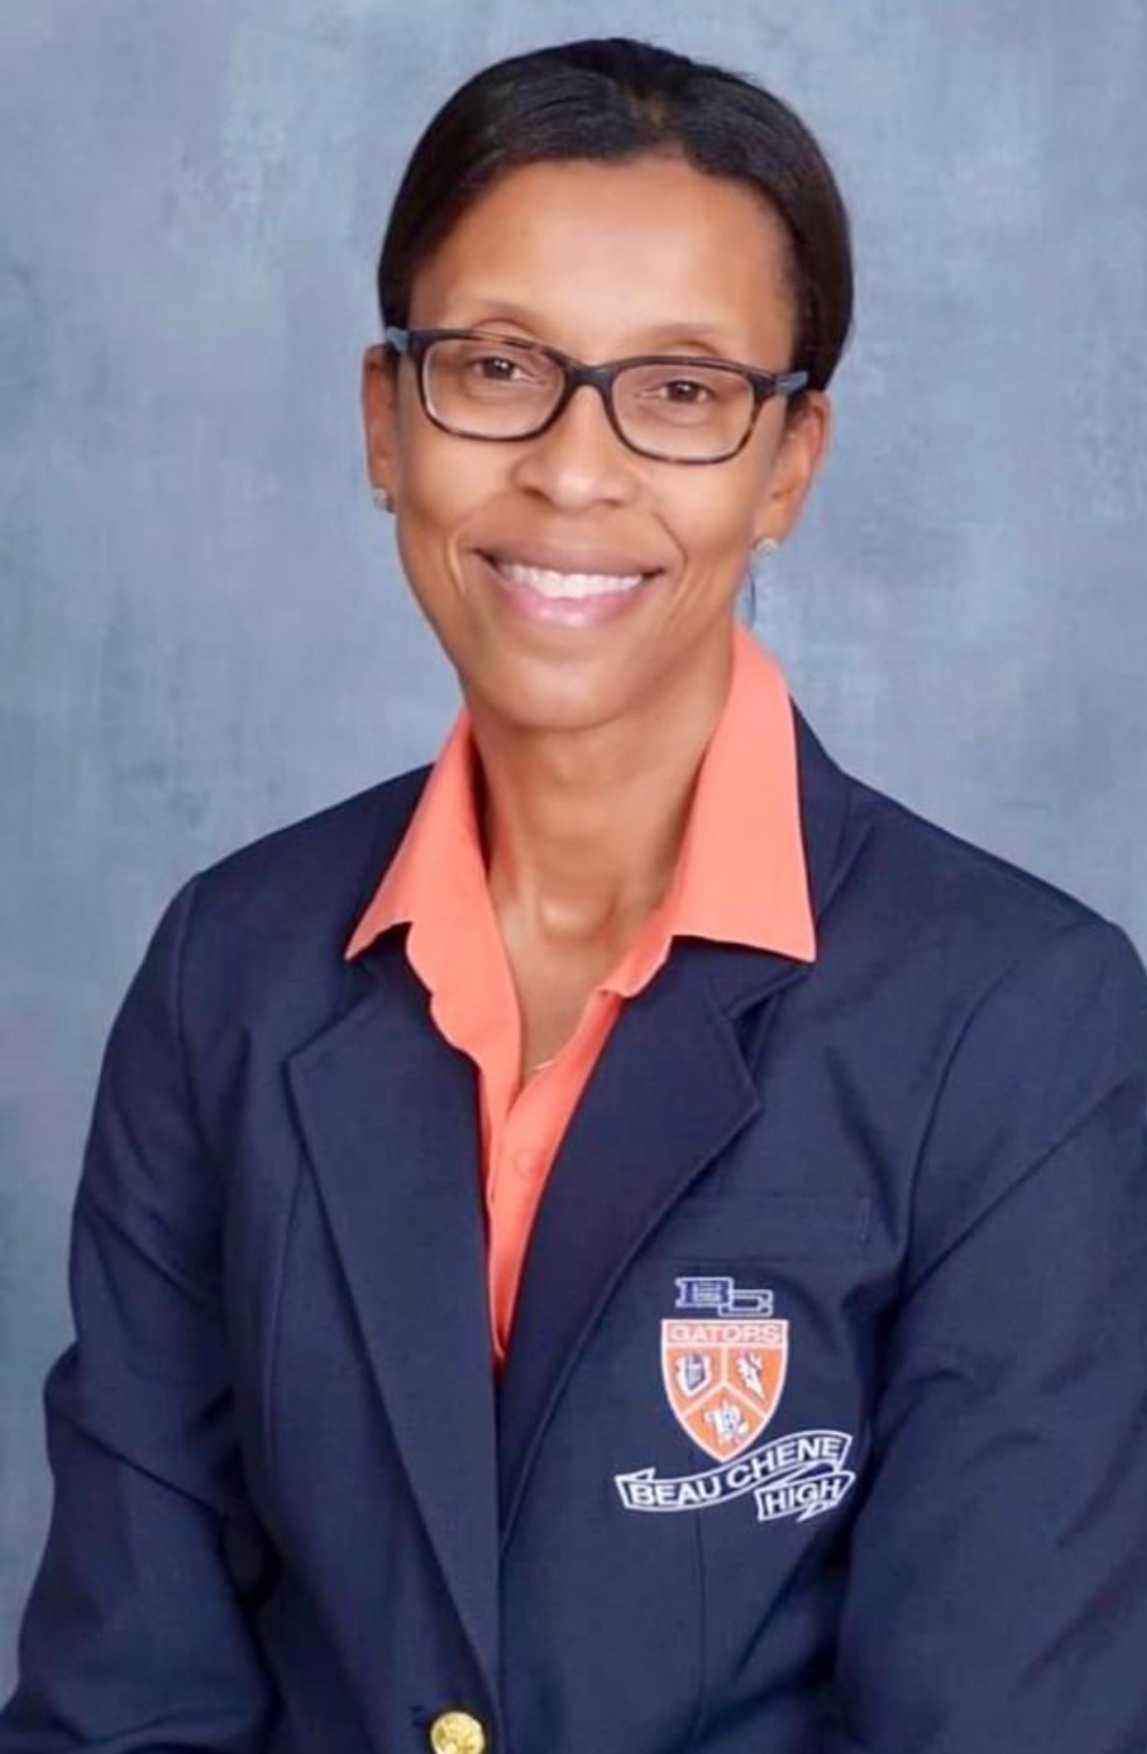 Principal Tiffany Etienne